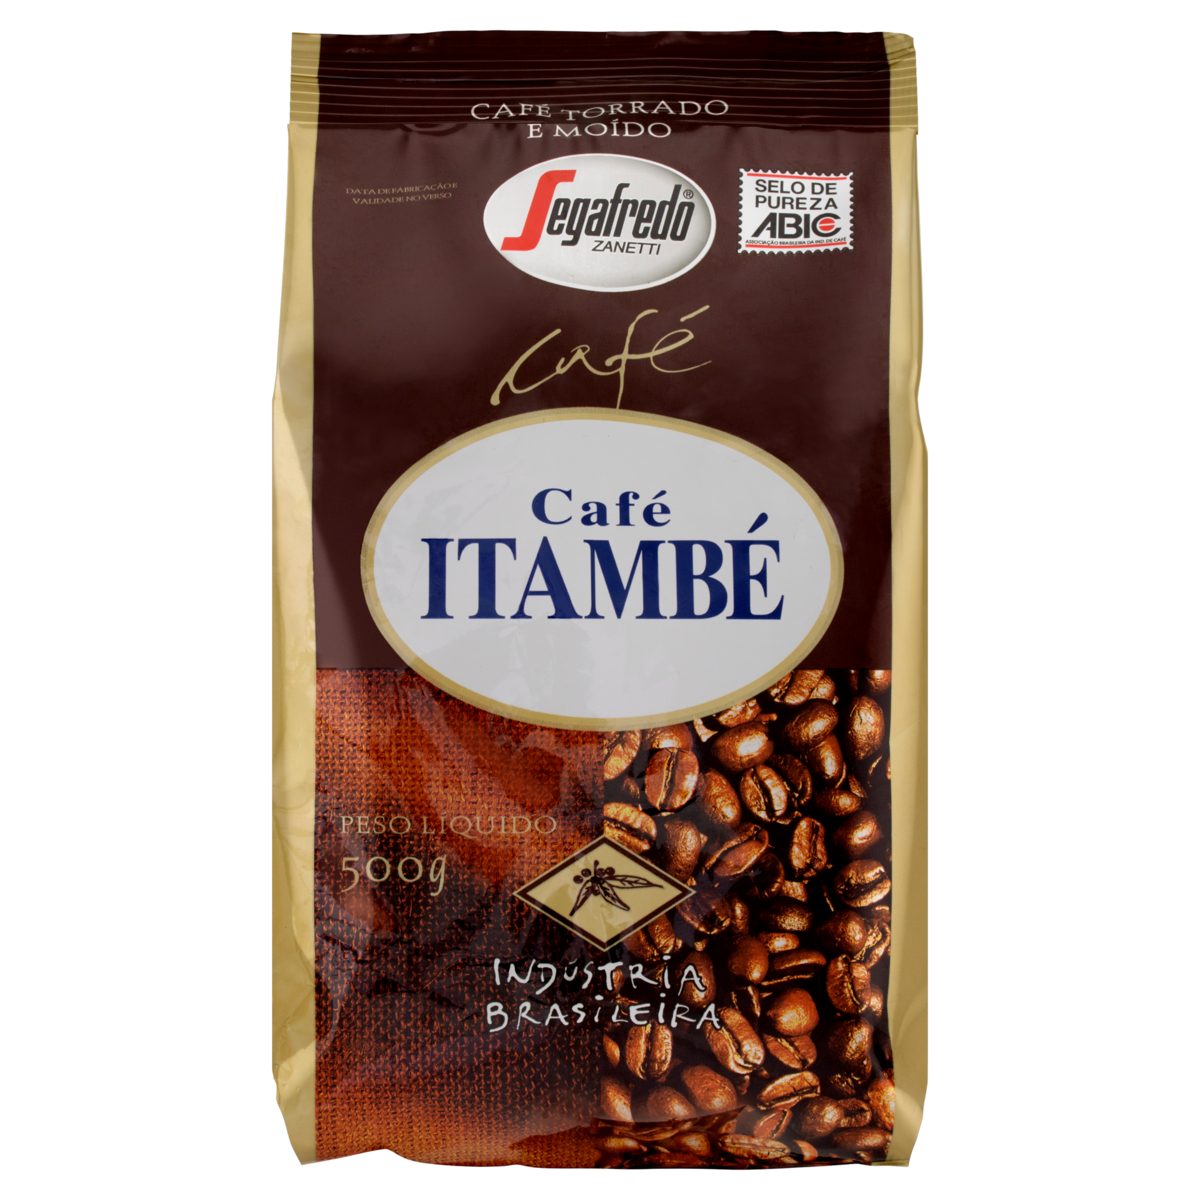 7896419500094 - CAFÉ TORRADO E MOÍDO CAFÉ ITAMBÉ PACOTE 500G